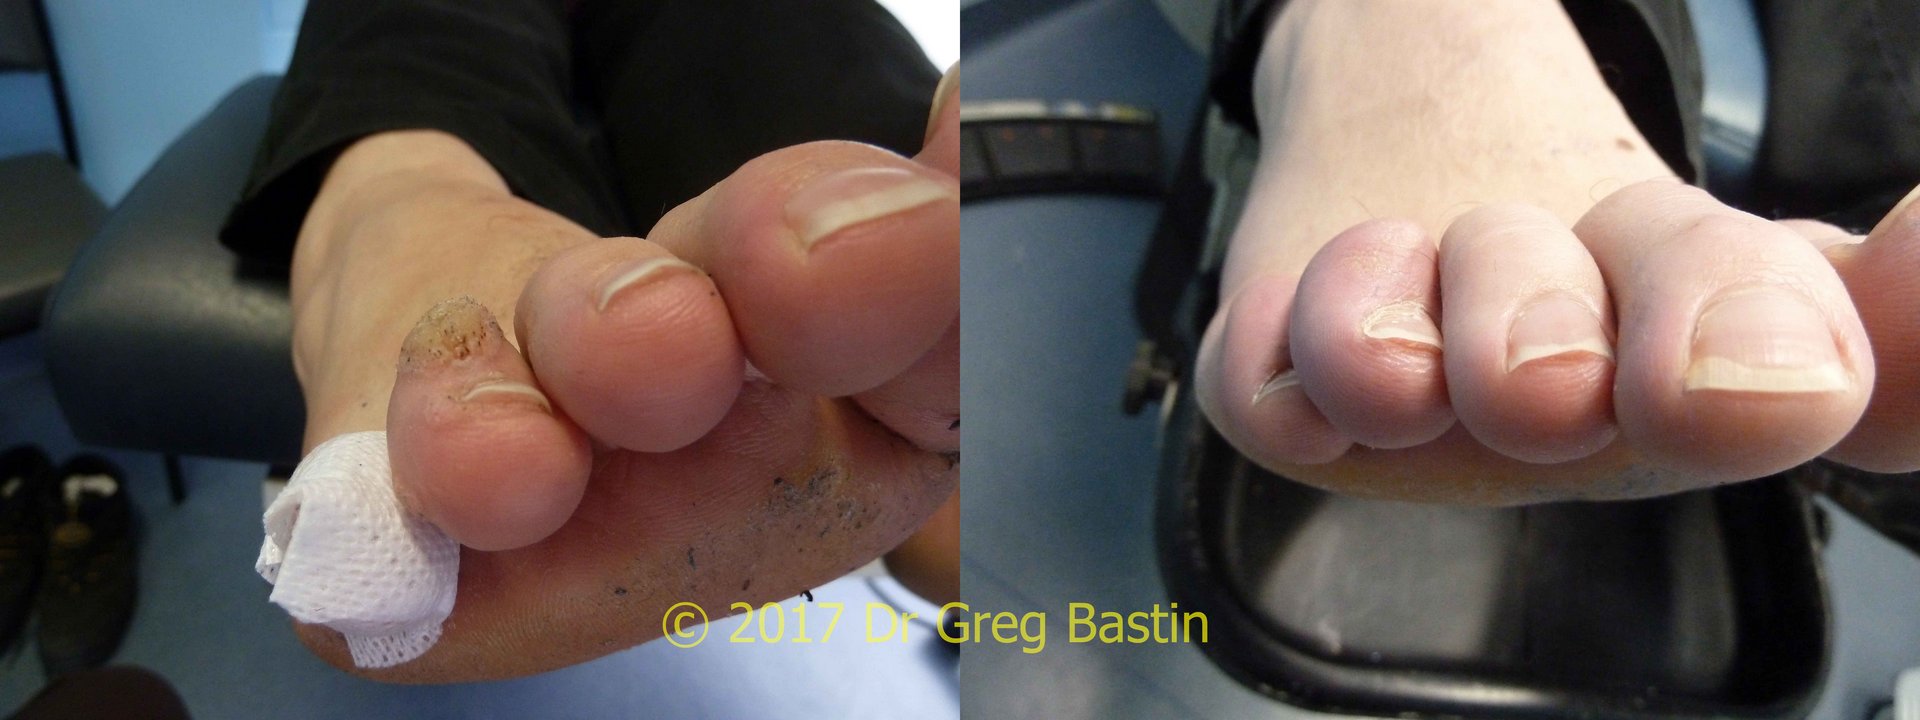 stubborn wart removal on feet